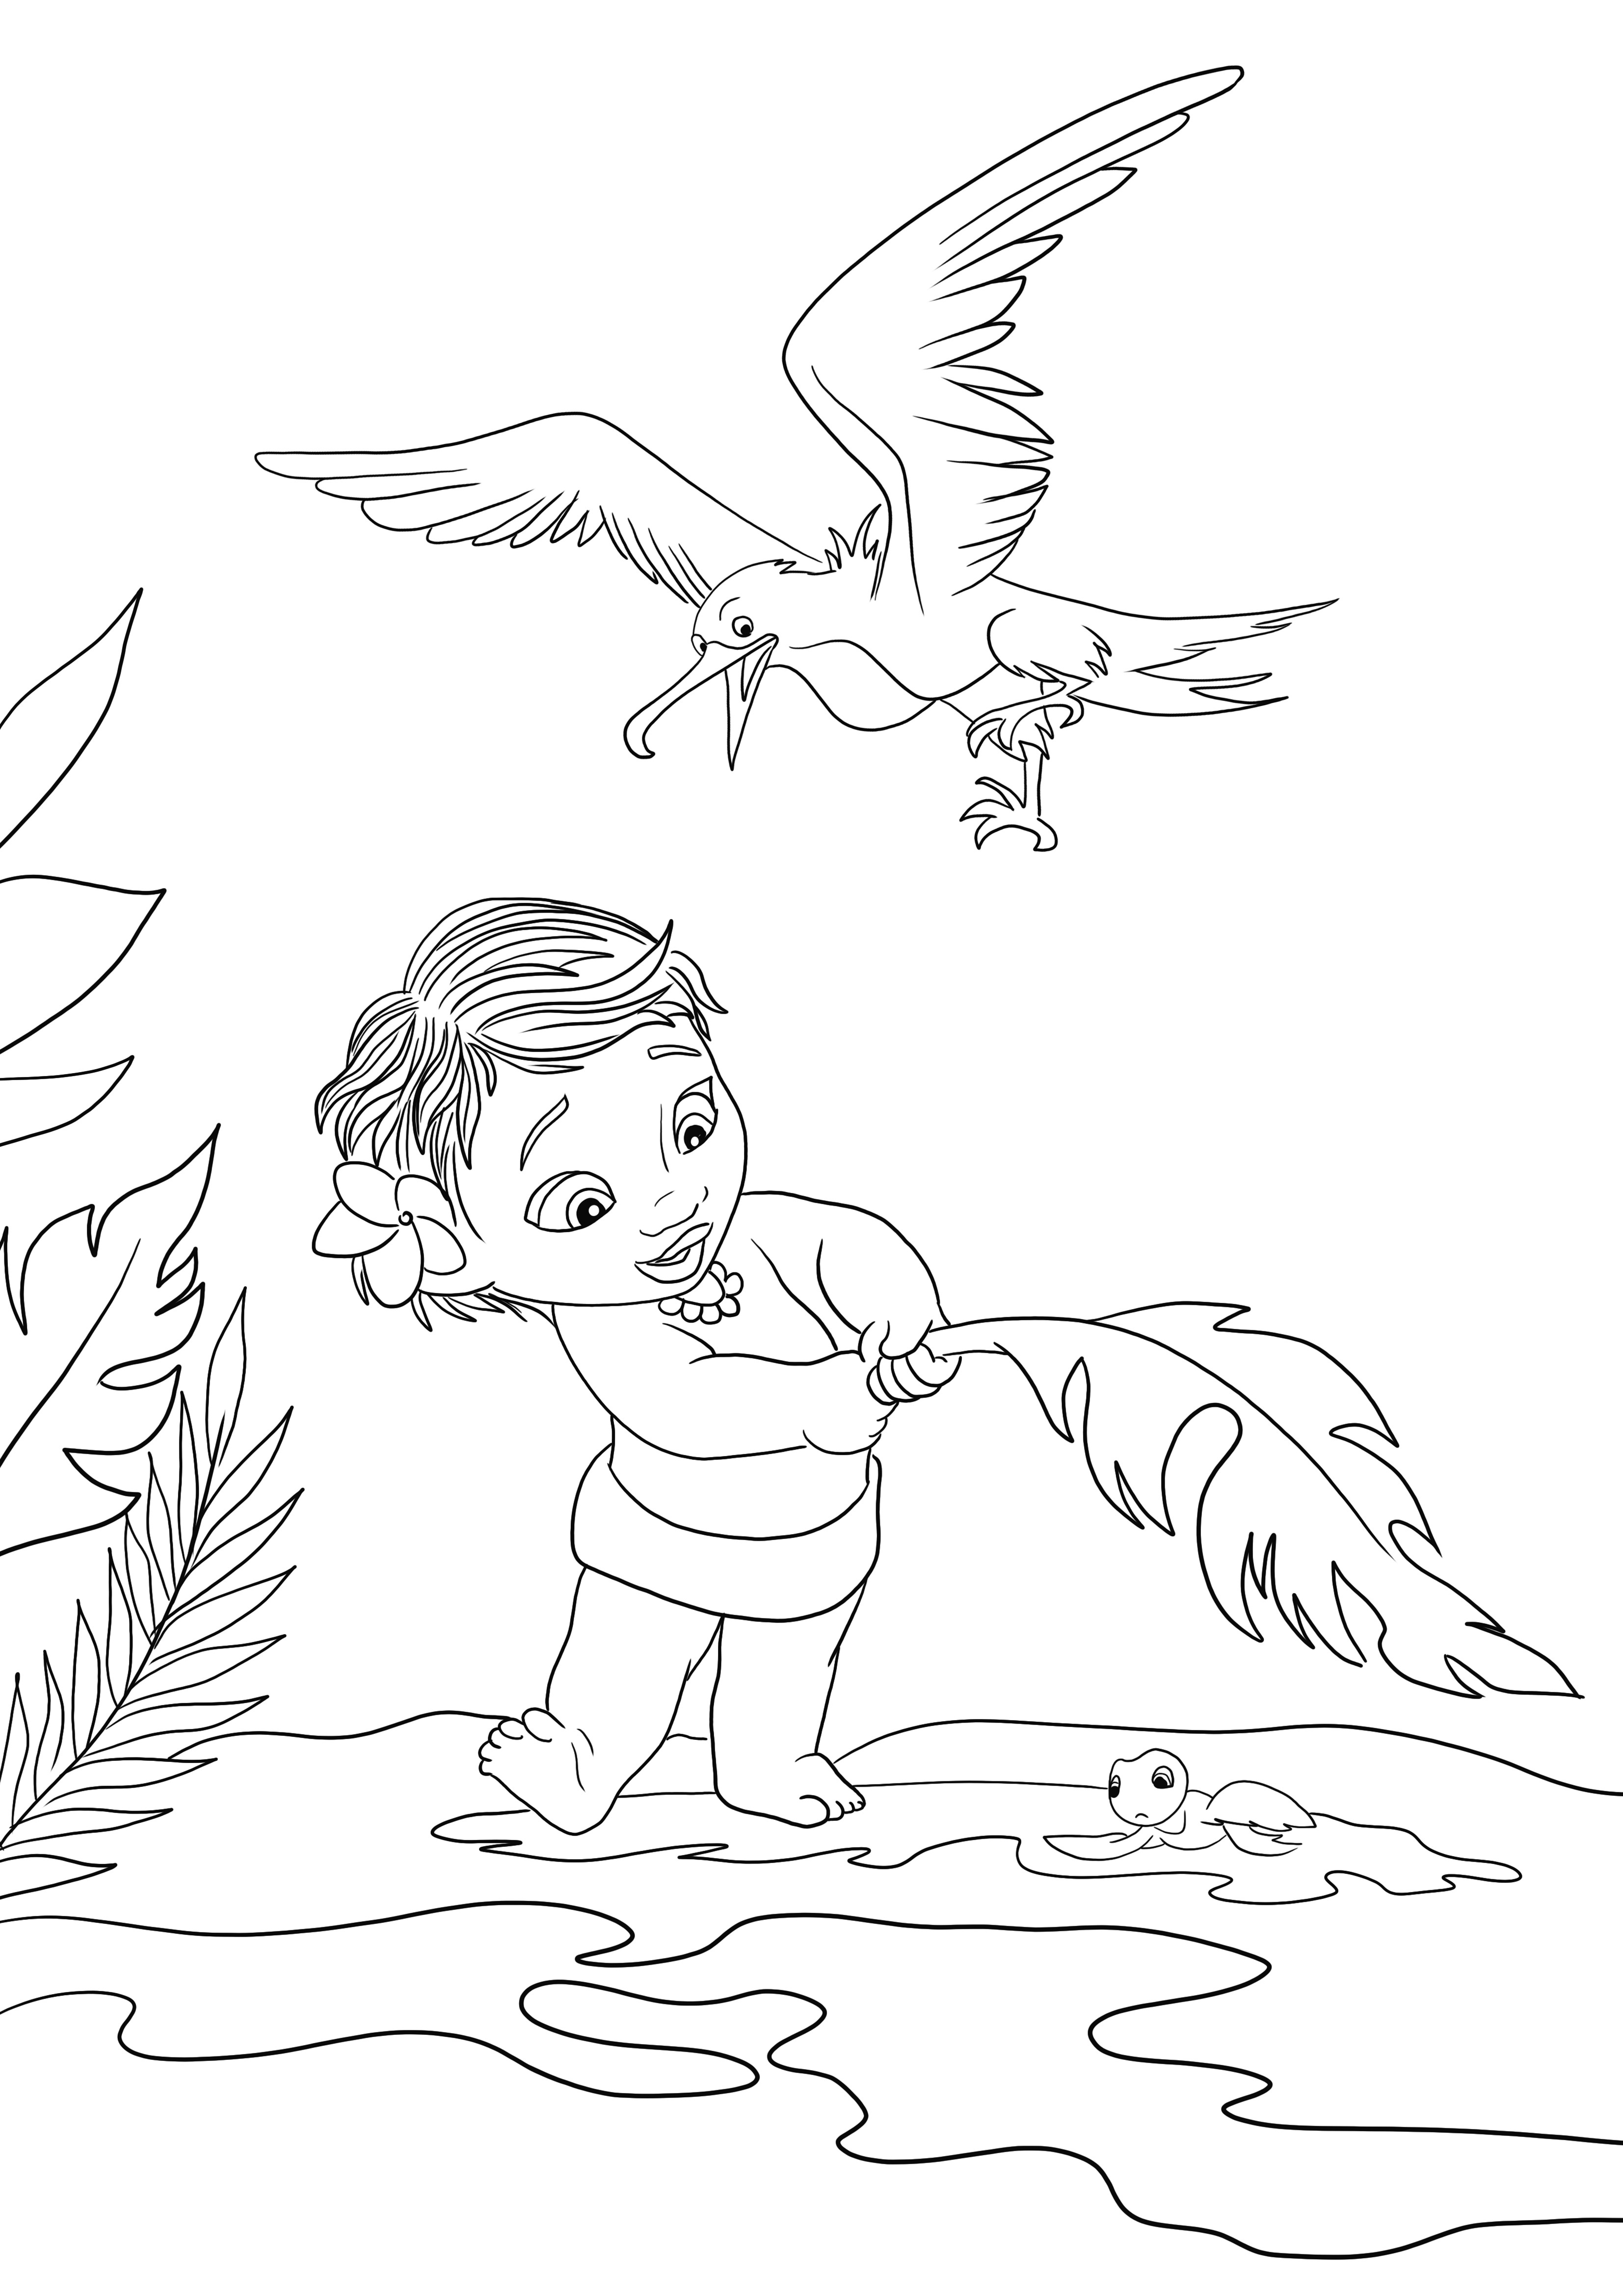 Küçük Moana ve Martı Çocuklar için ücretsiz yazdırılabilir ve boyama sayfası